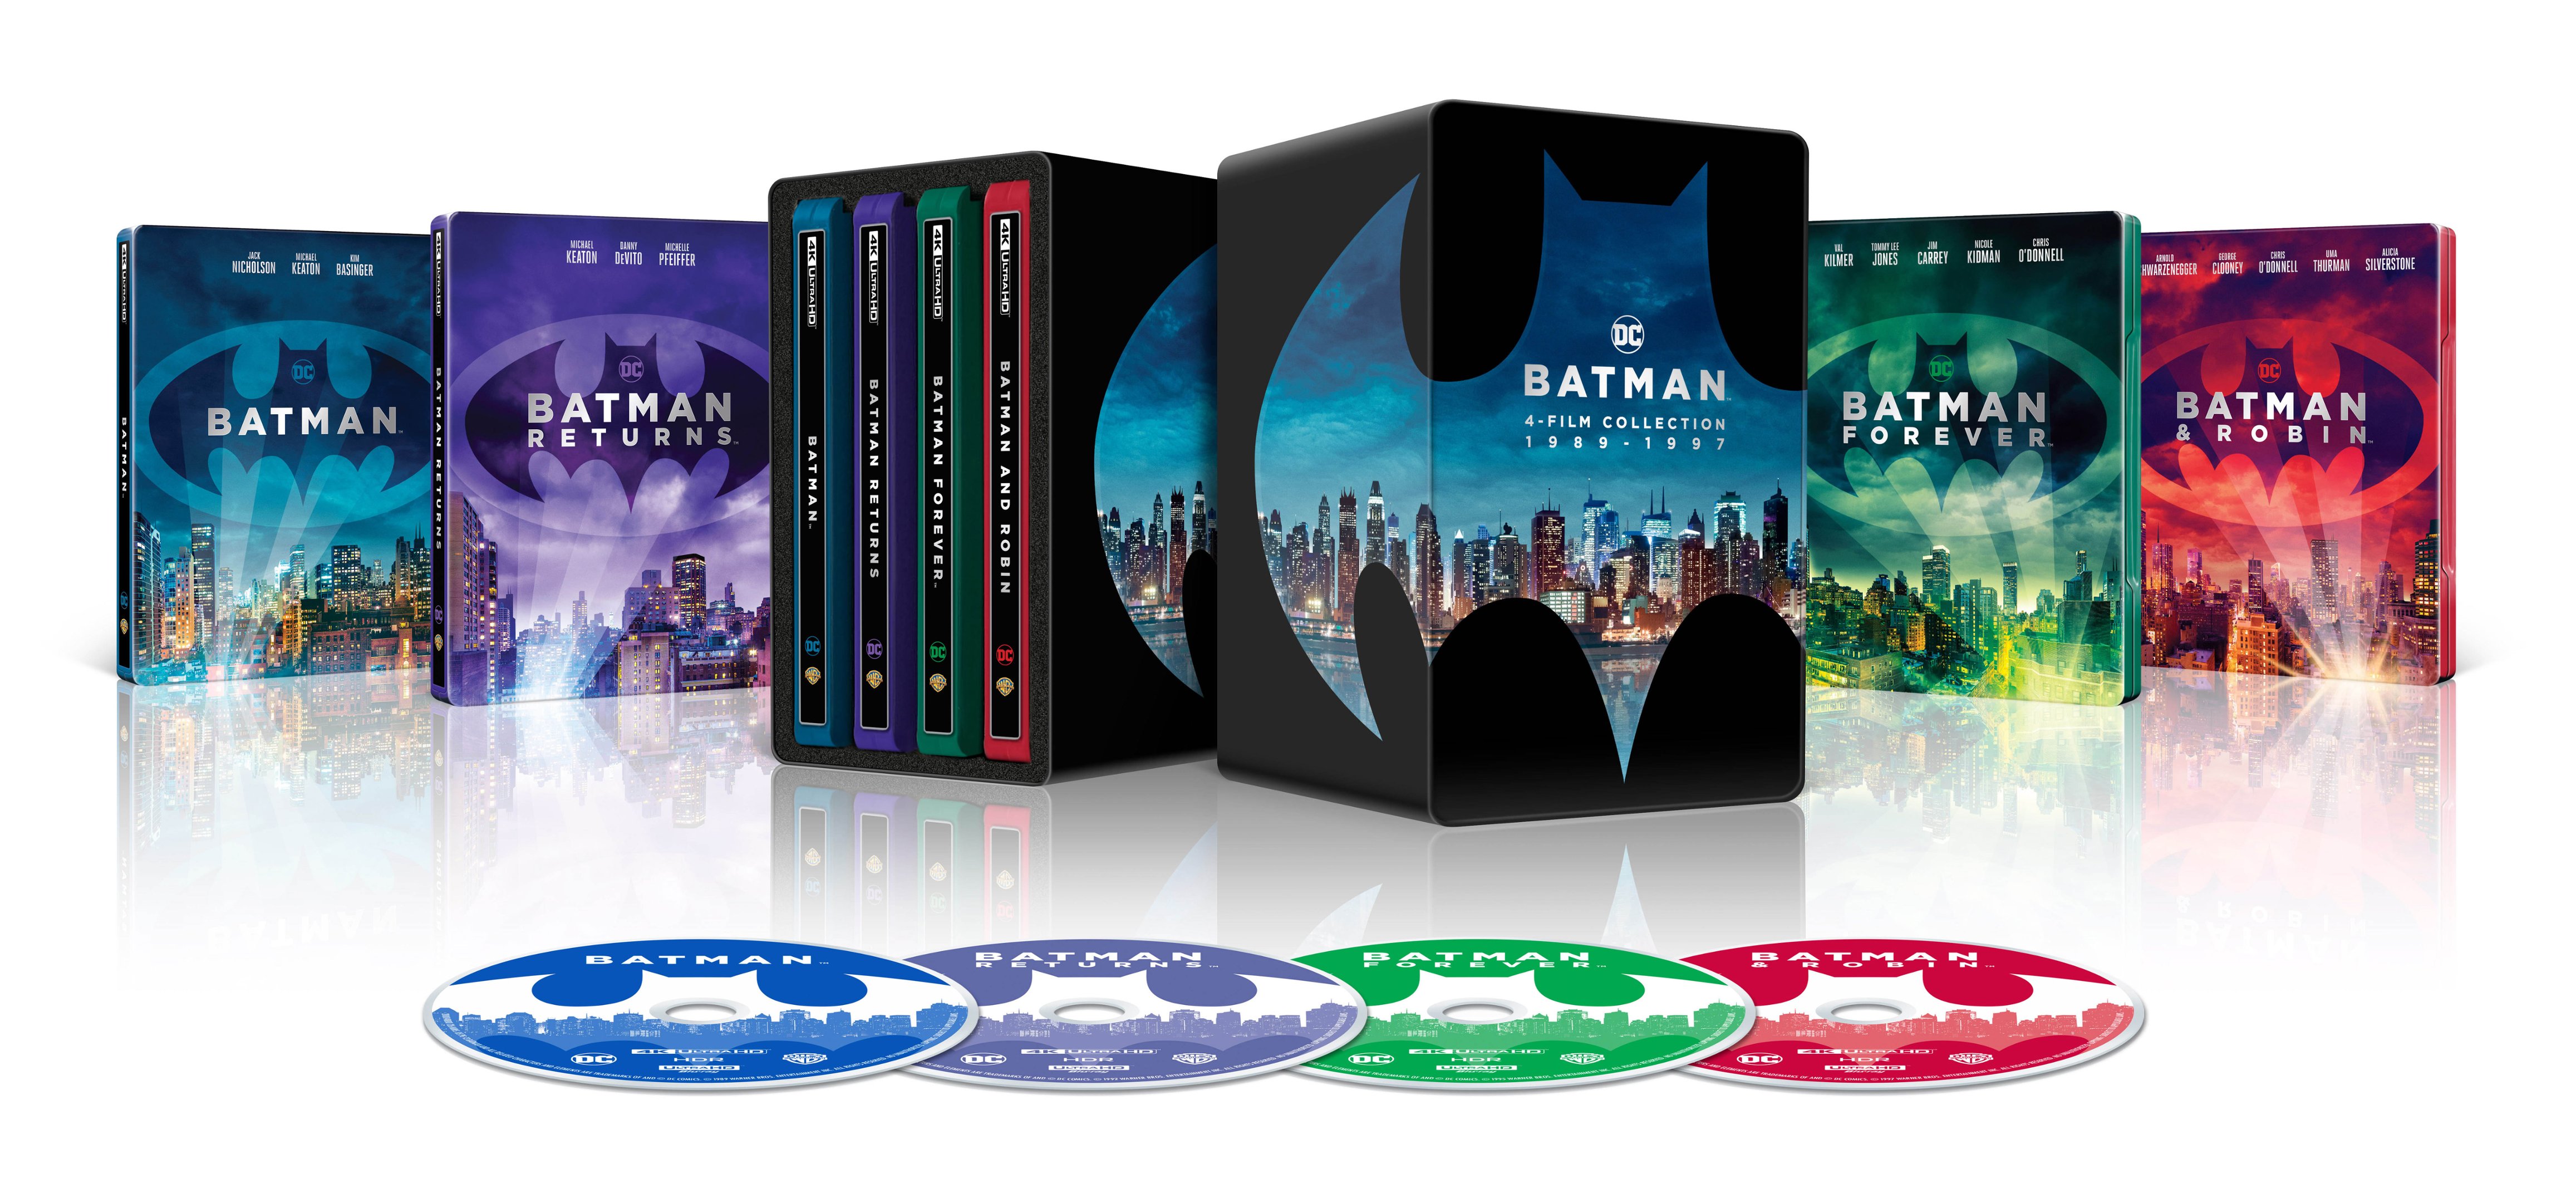 Batman 4K Film Collection [SteelBook] [Digital Copy] [4K Ultra HD Blu-ray]  [Only @ Best Buy] - Best Buy